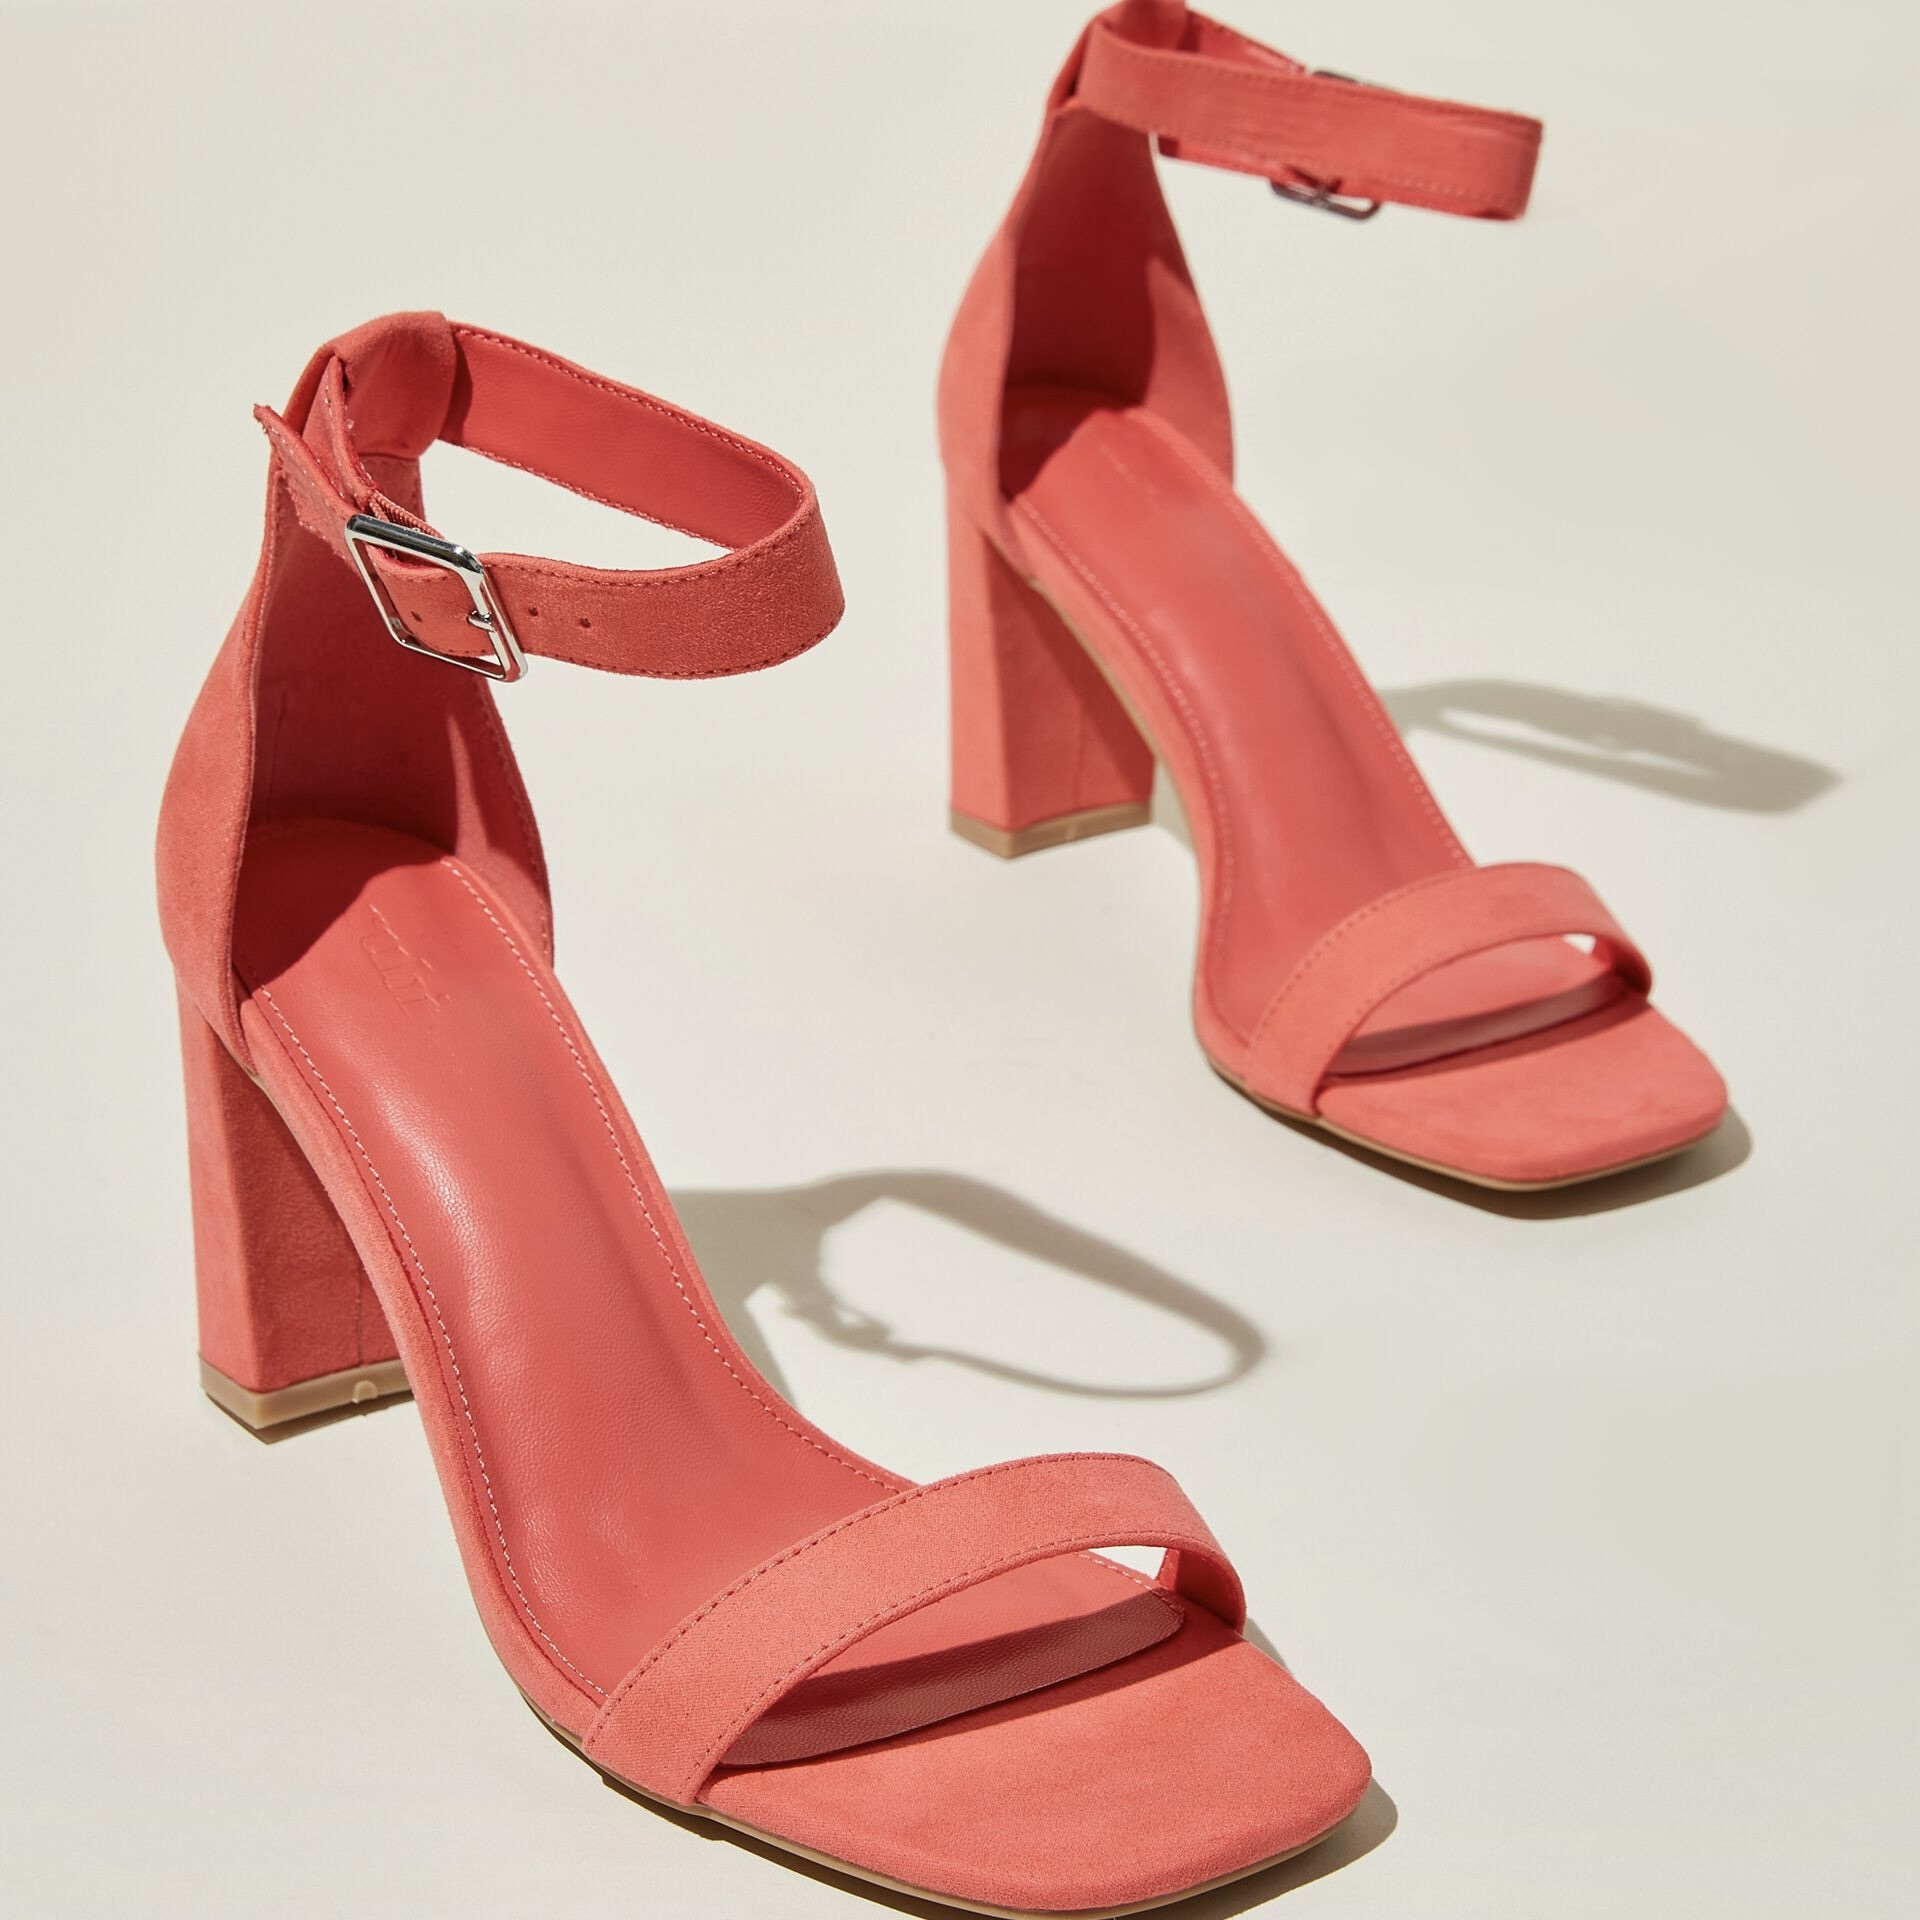 Cute Pink Heels - High Heel Sandals - $27.00 - Lulus